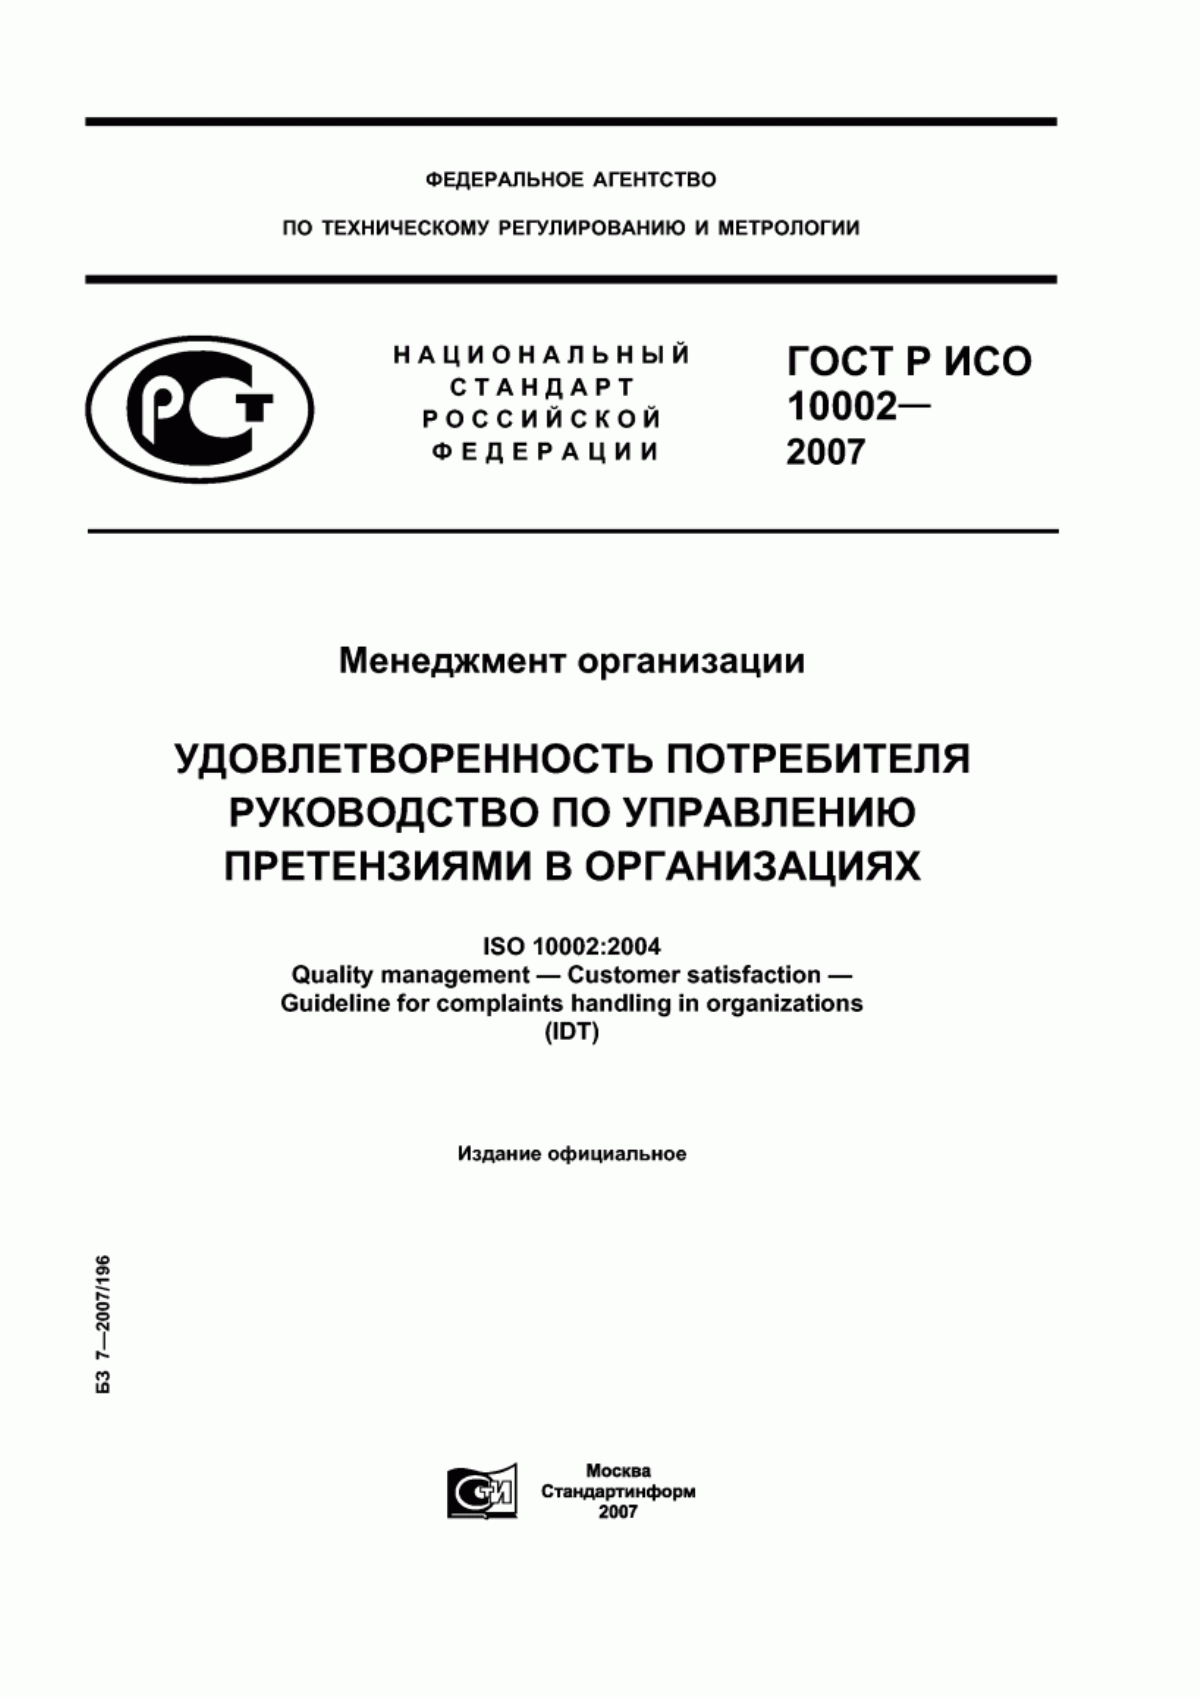 ГОСТ Р ИСО 10002-2007 Менеджмент организации. Удовлетворенность потребителя. Руководство по управлению претензиями в организациях